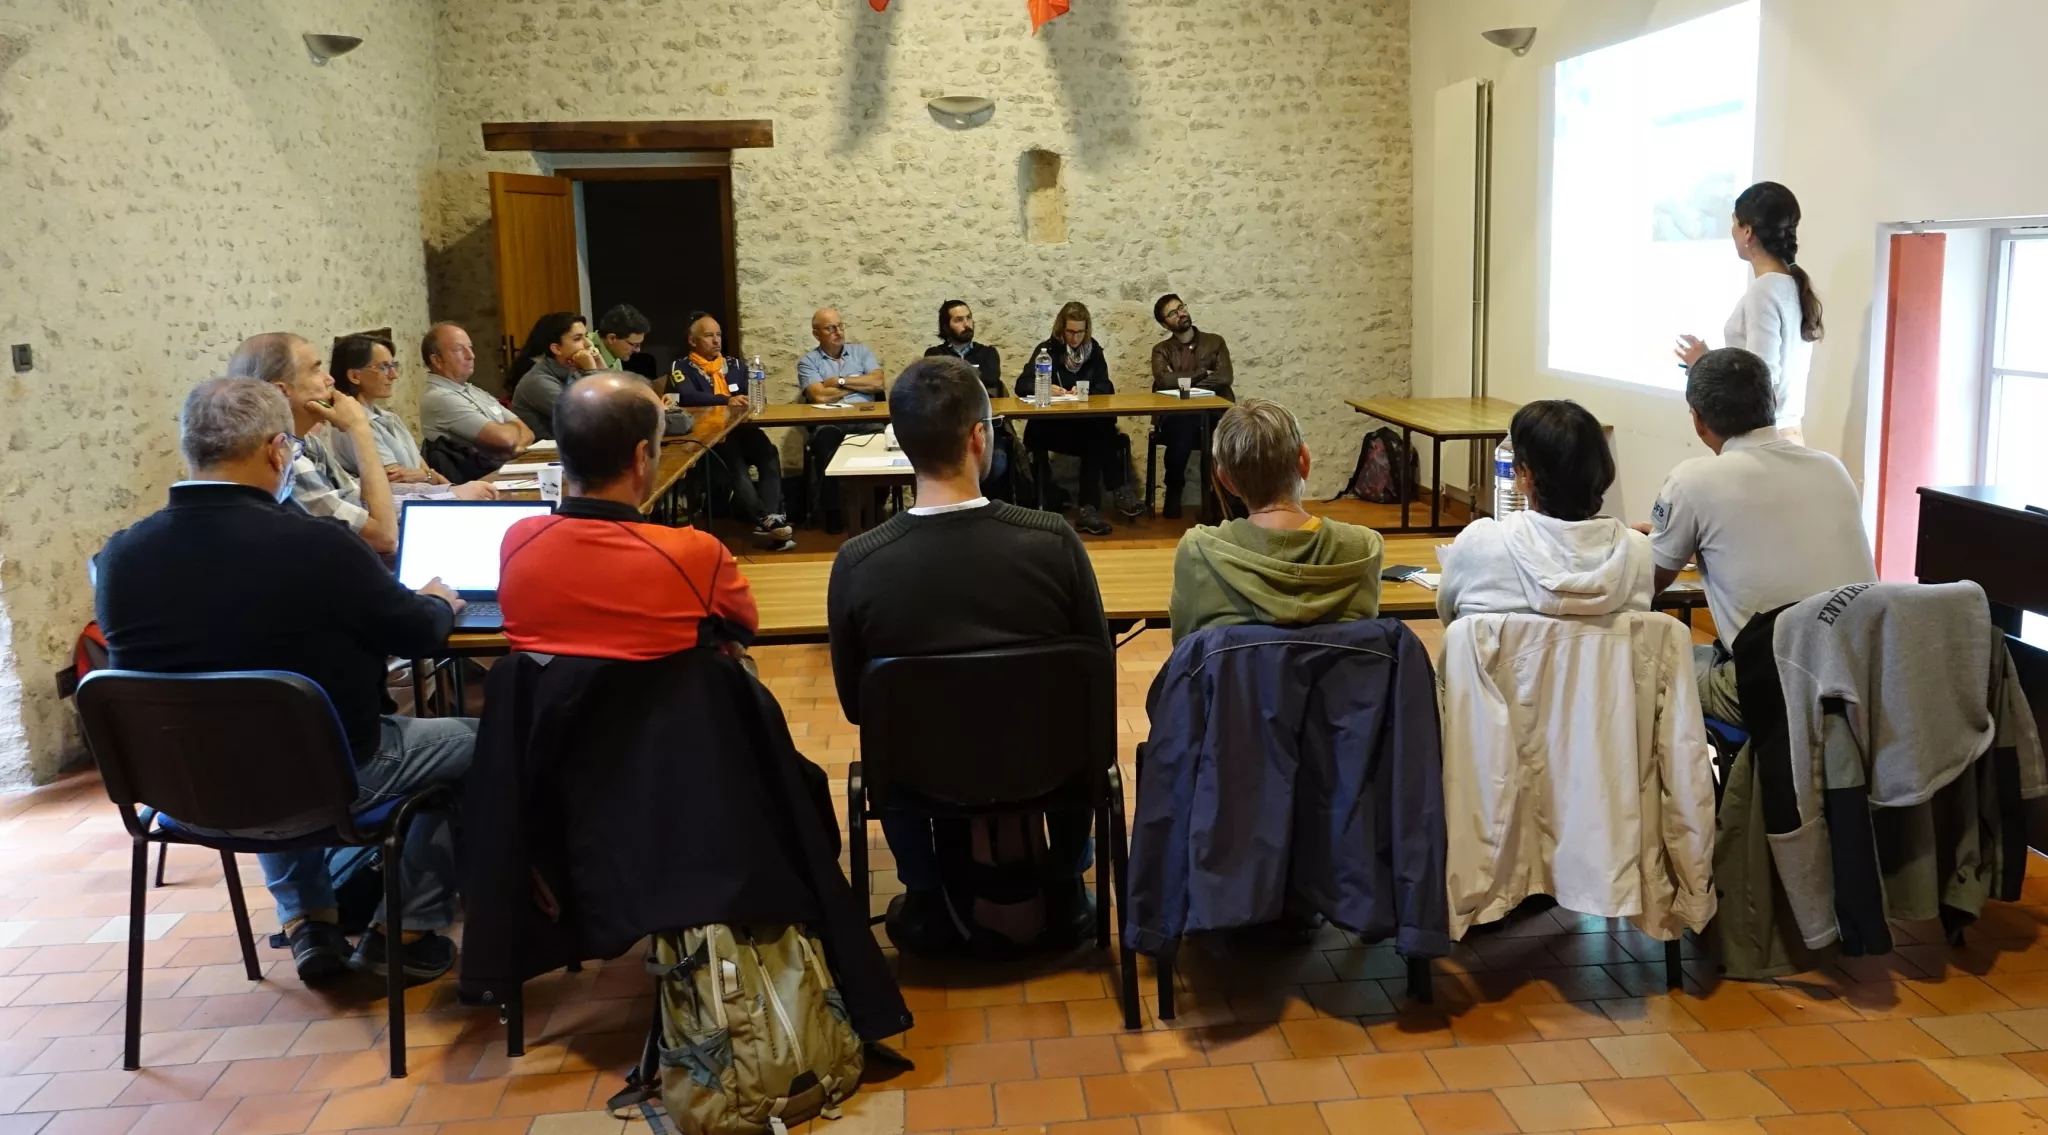 Les participants installés dans la salle communale de Marigny-les-Usages